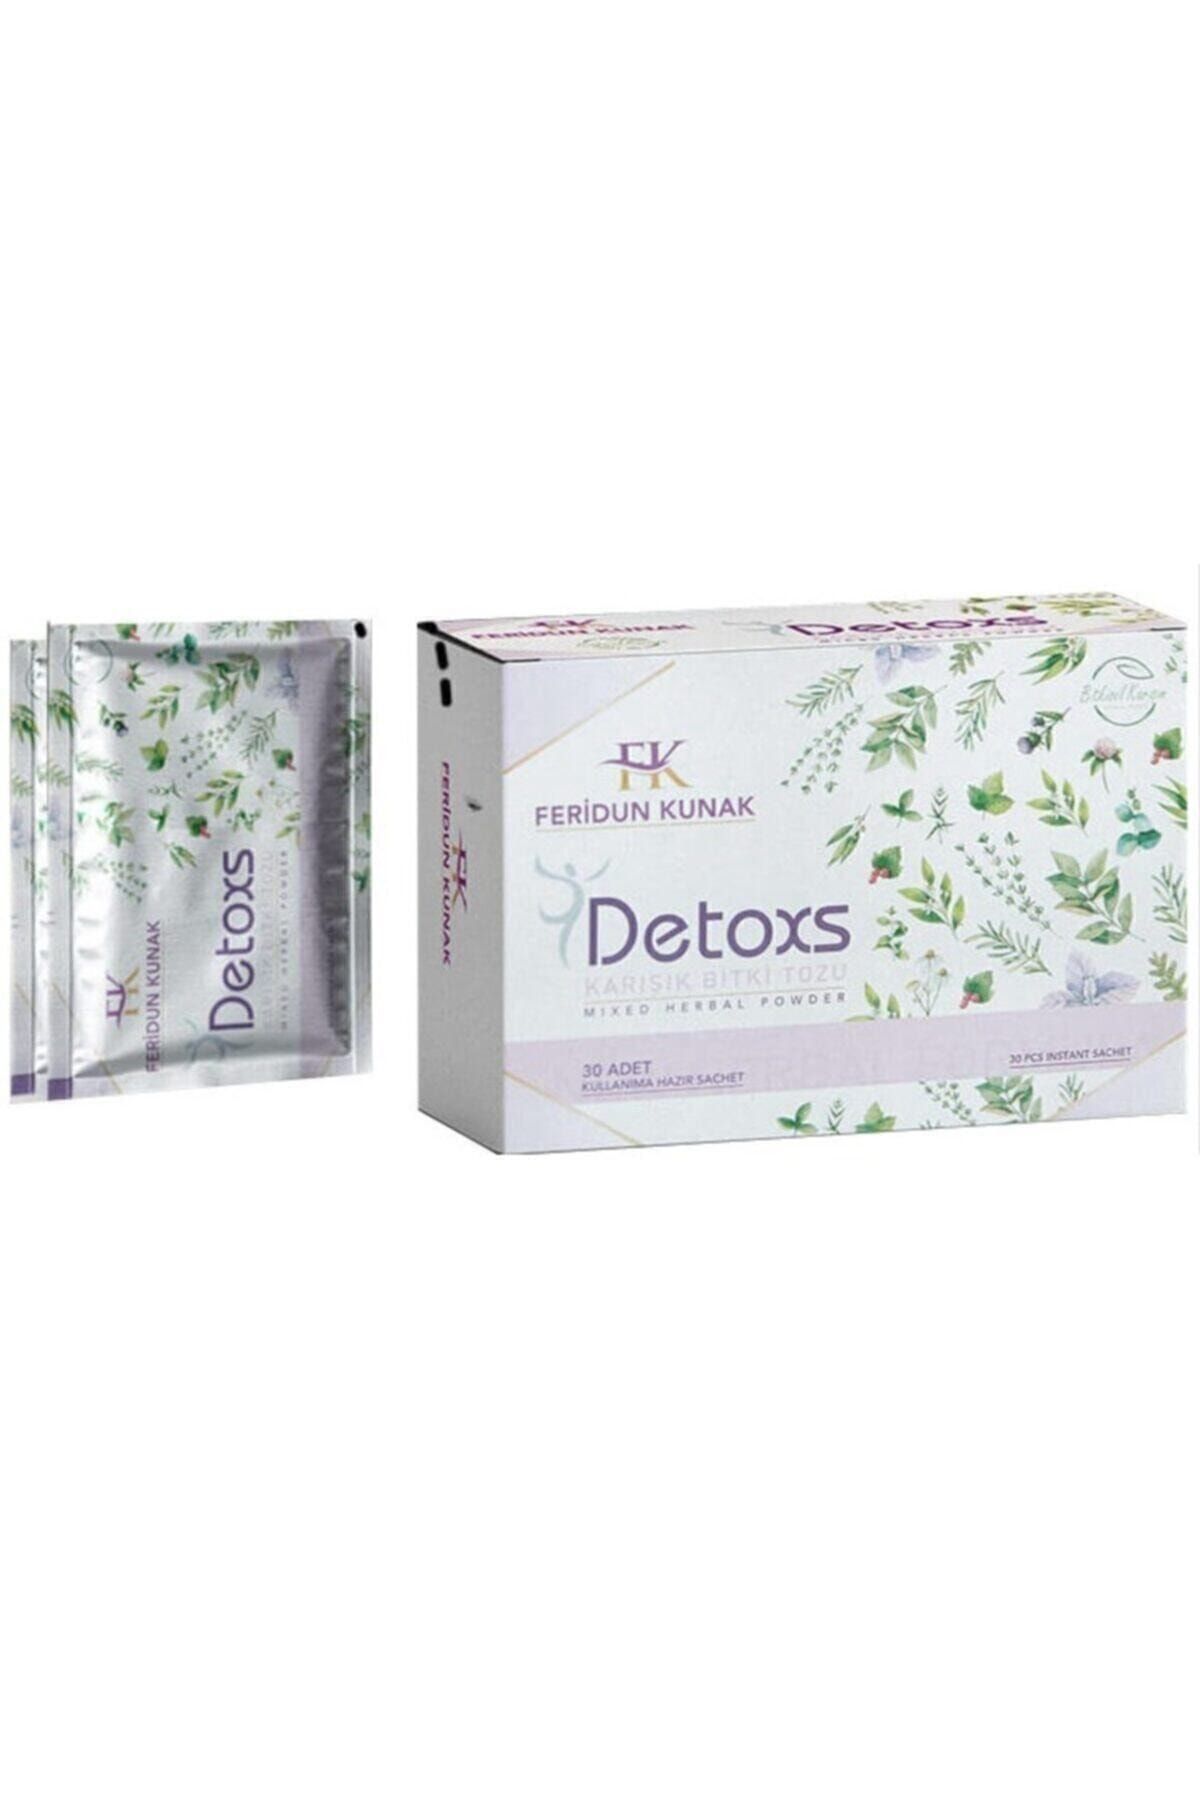 Feridun Kunak Detoxs Karışık Bitki Tozu - Detoxs Çayı 30 Günlük Kullanım 150g